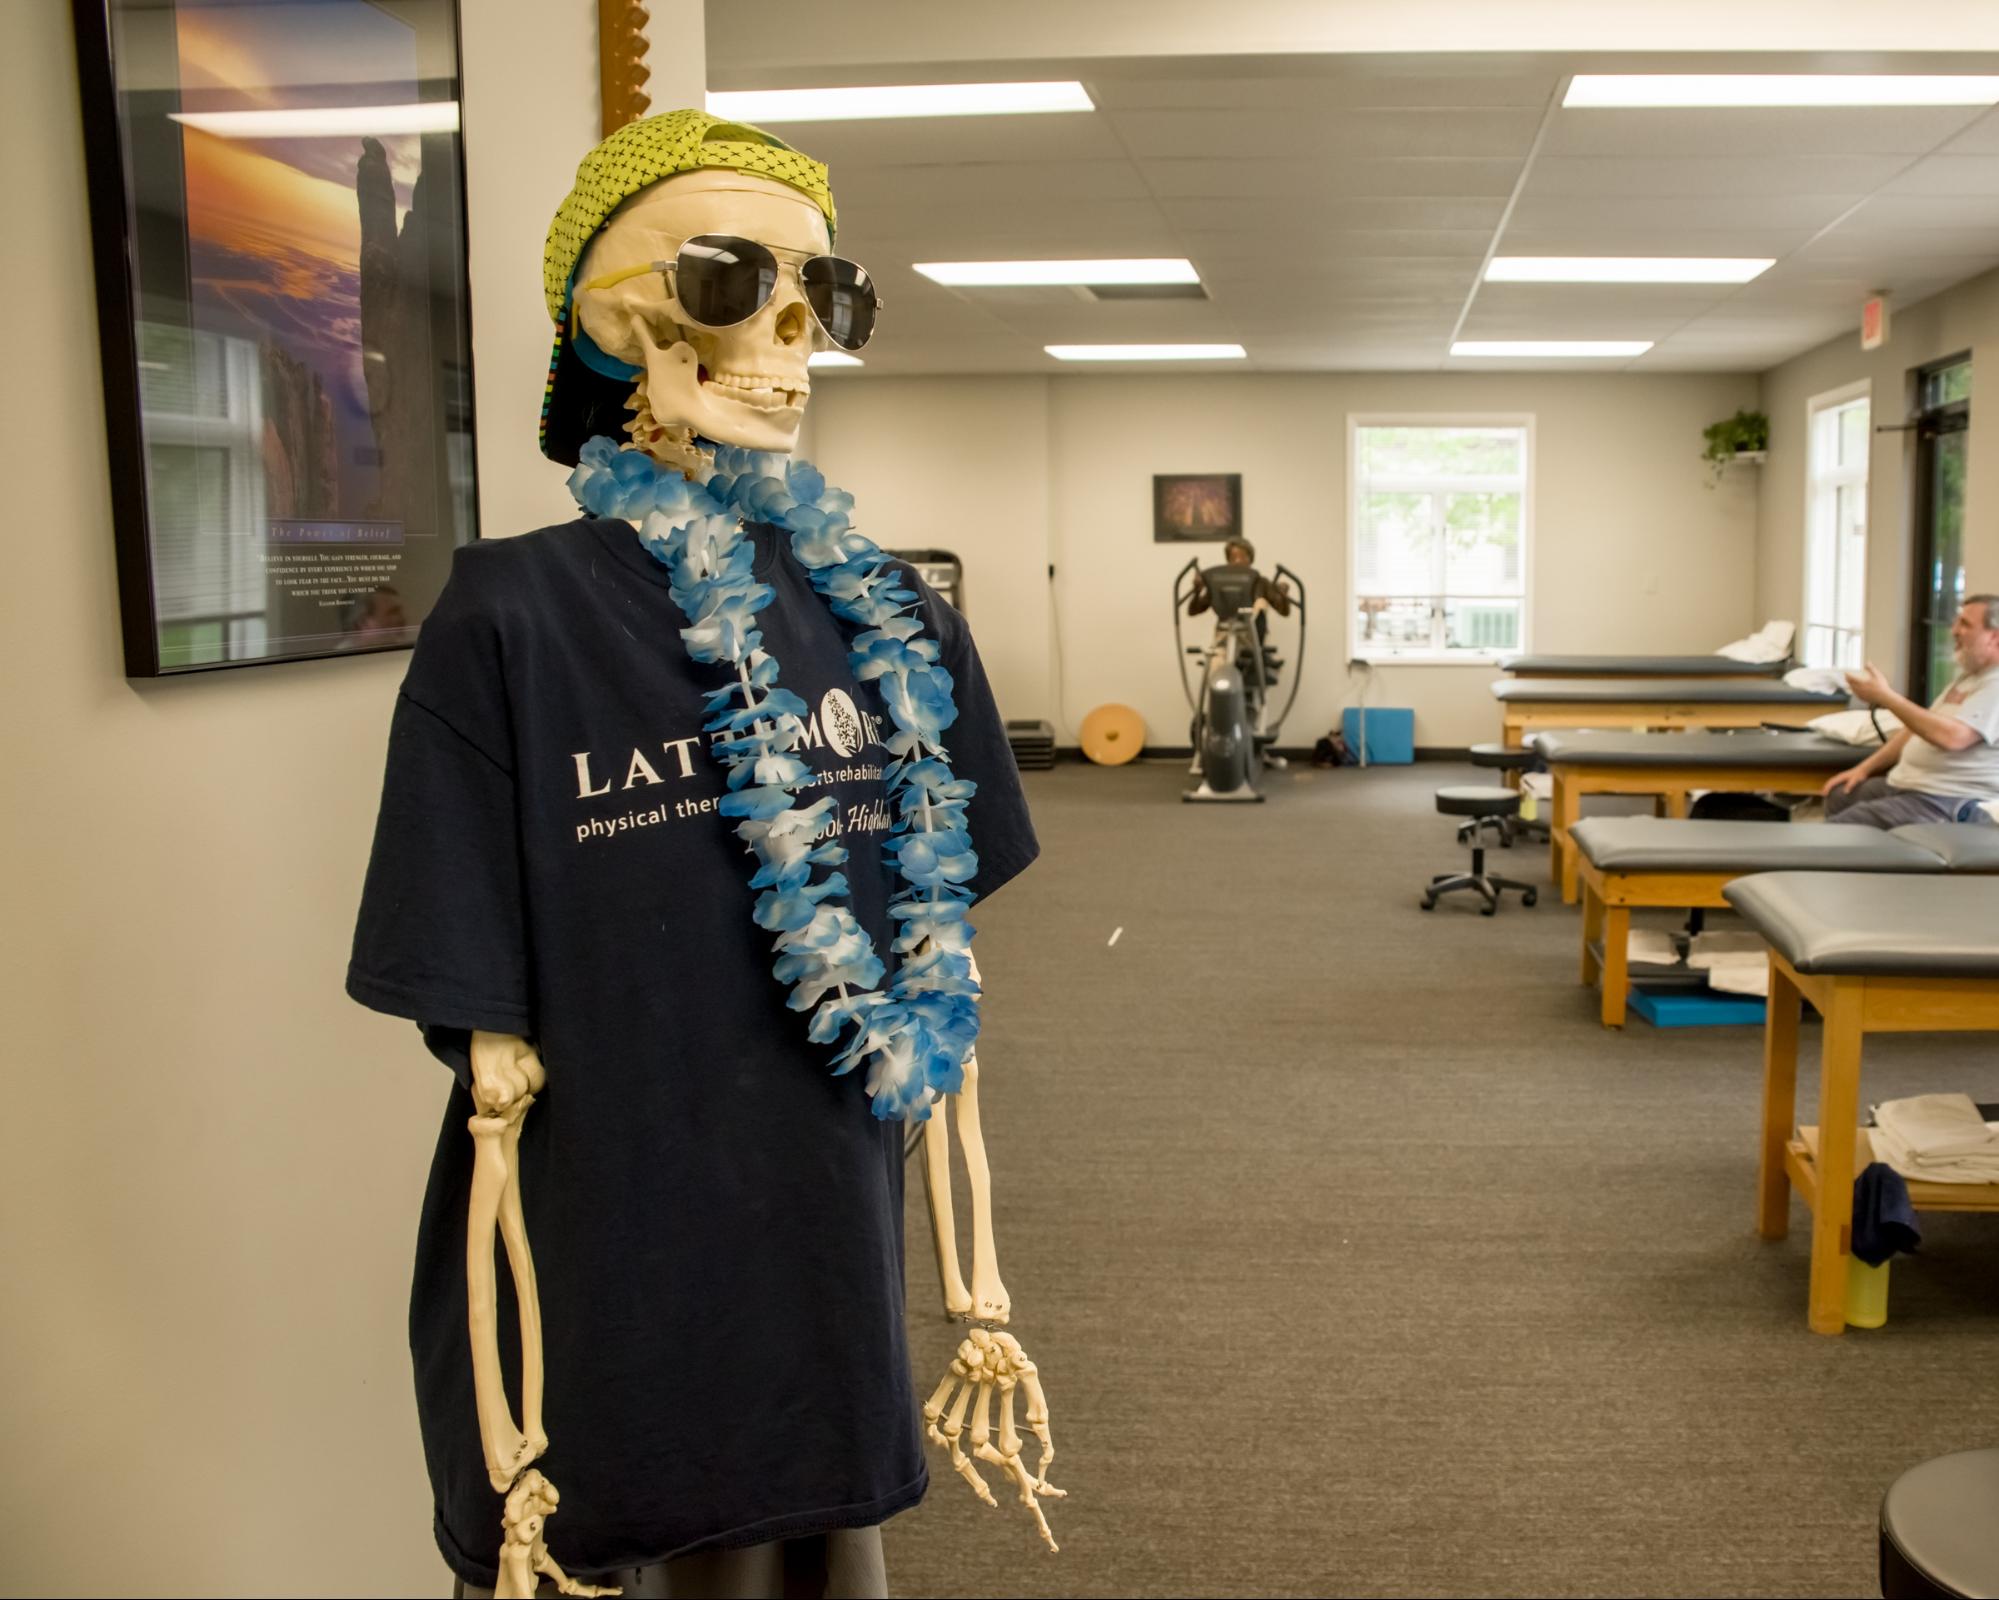 Lattimore Skeleton wearing Lattimore Shirt, lei and hat